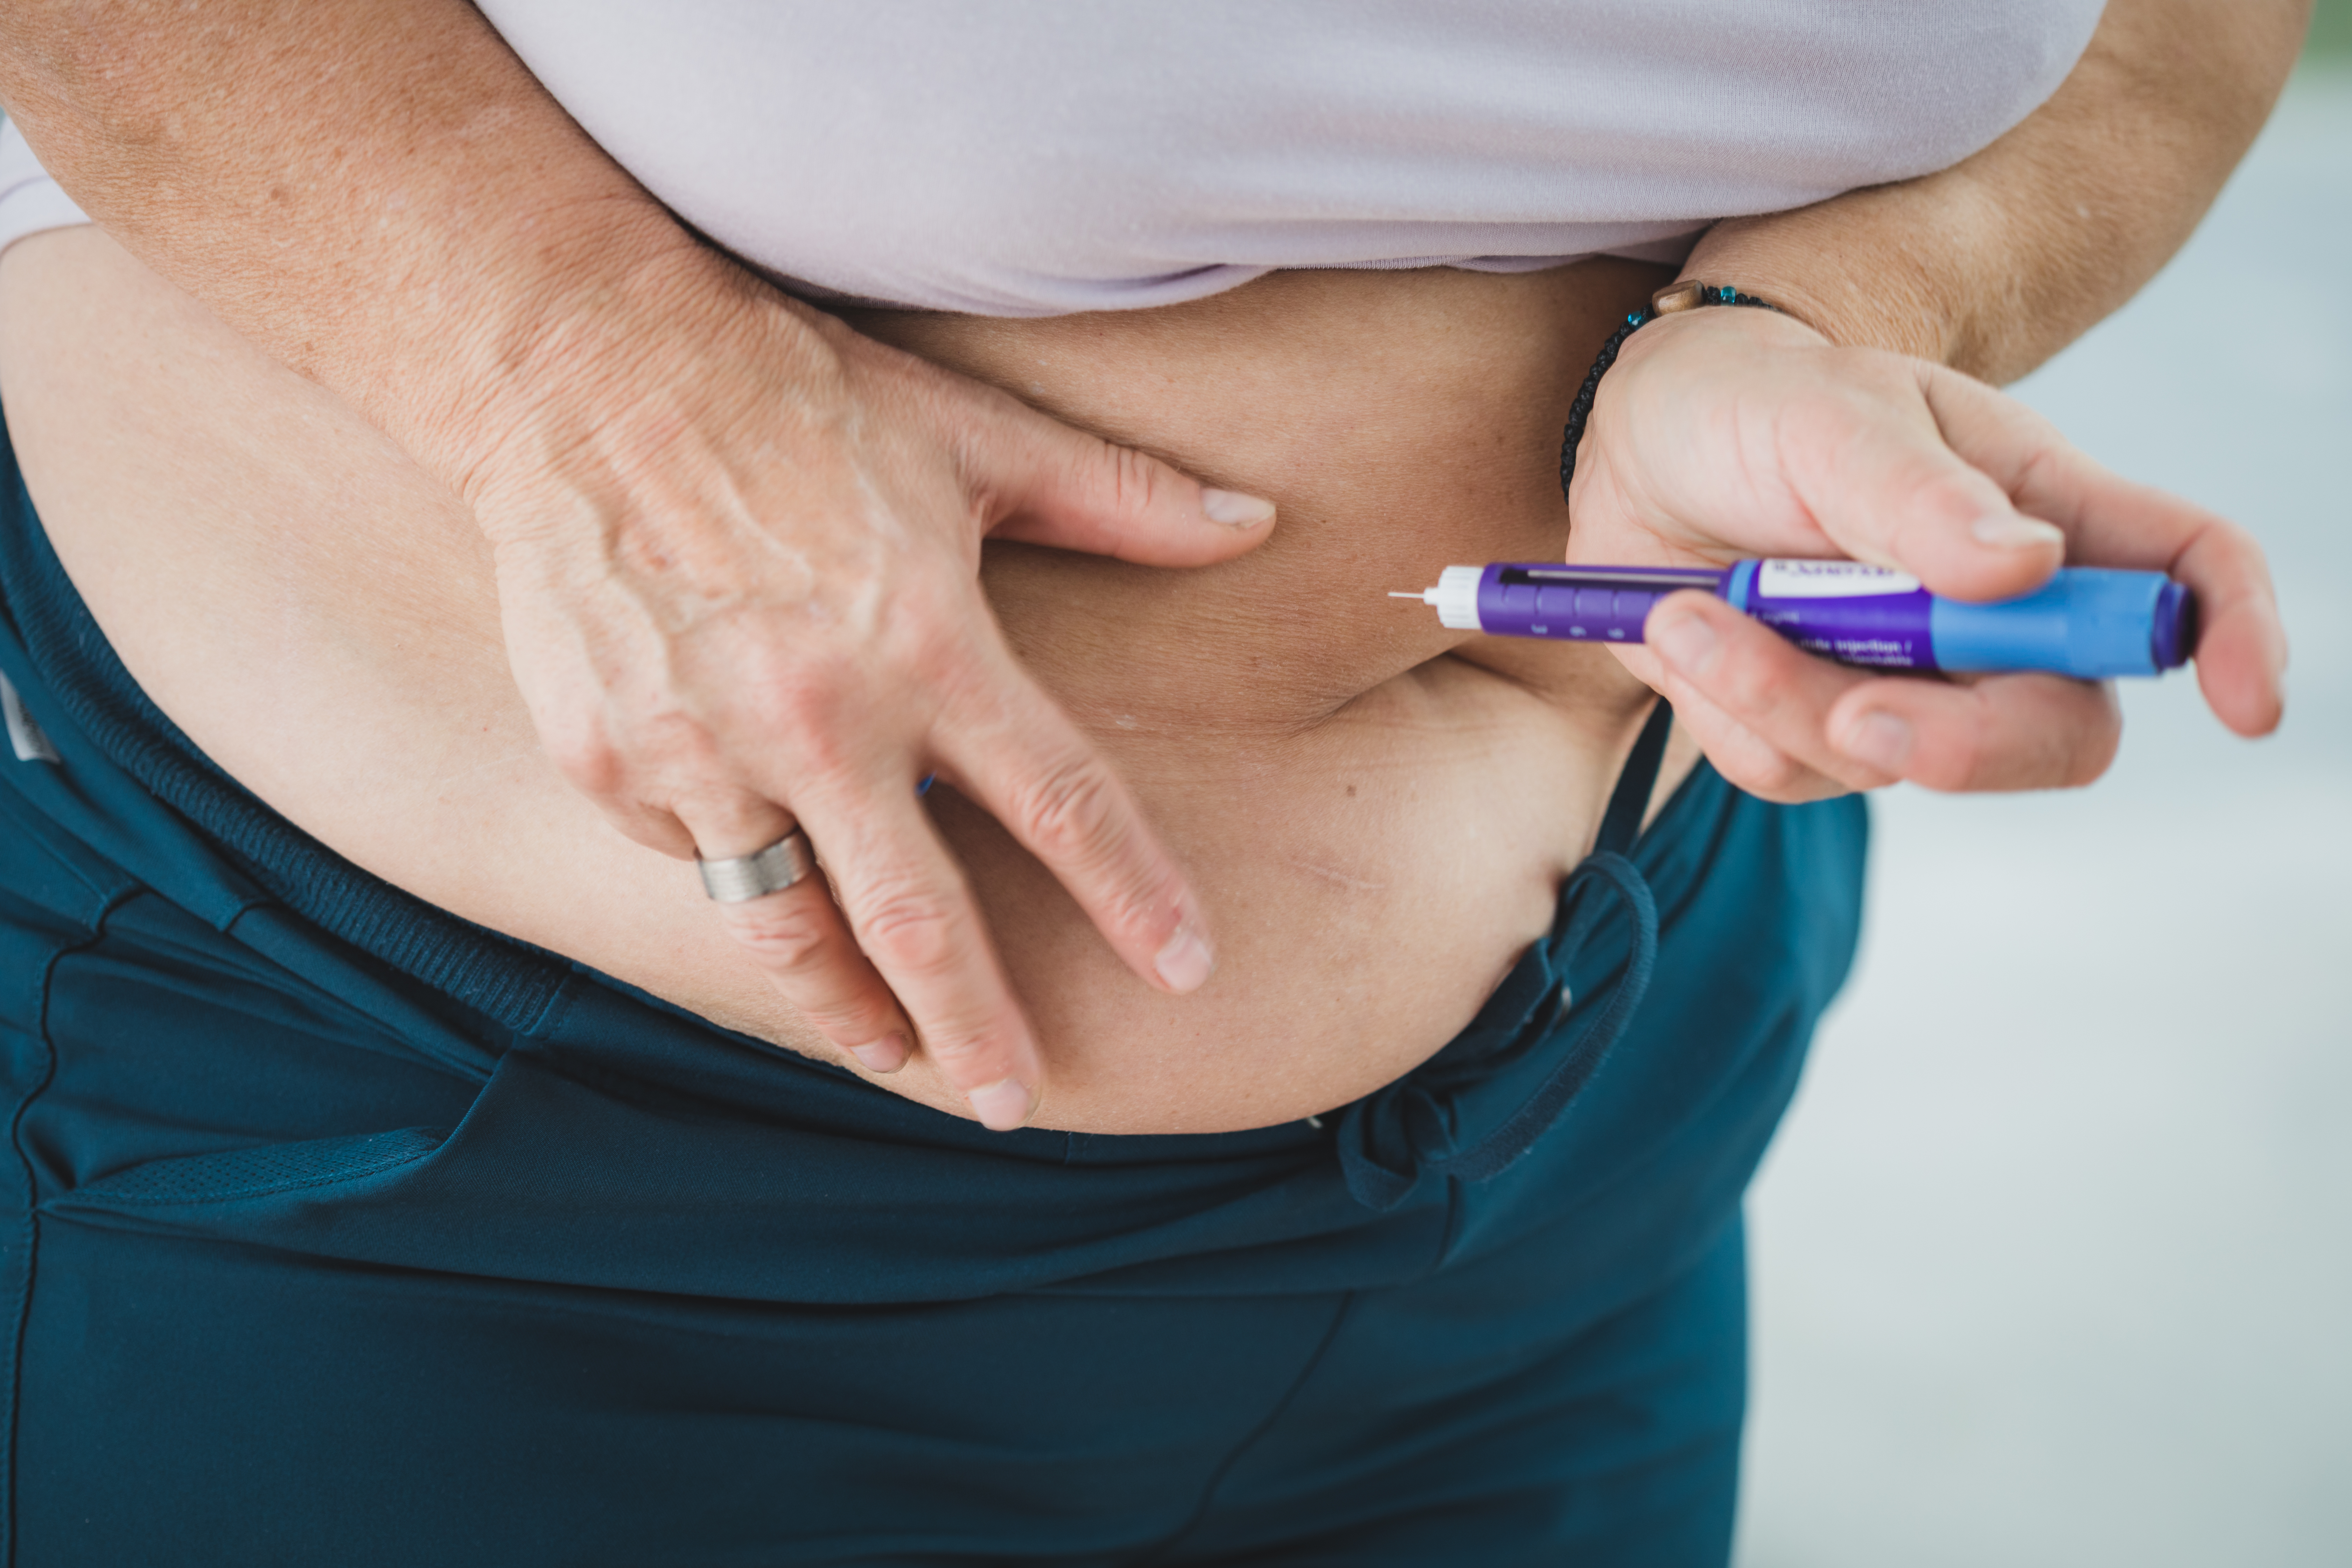 Medicina contra la diabetes escasea después de que muchos empezaran a  usarla para bajar de peso 